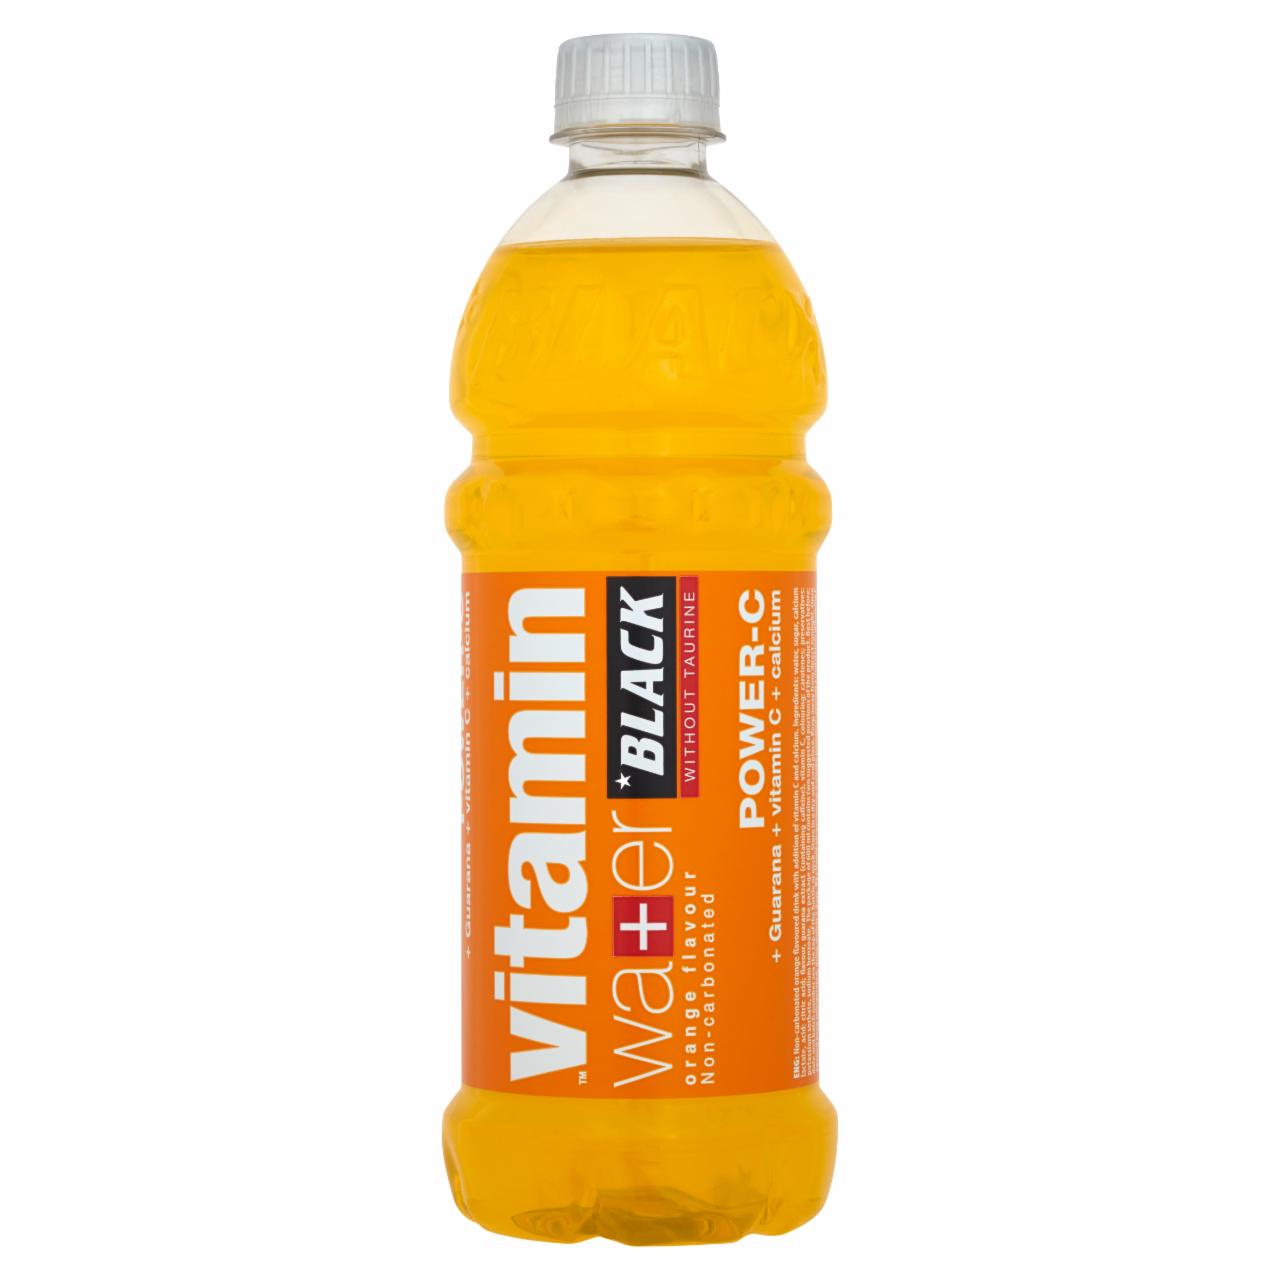 Zdjęcia - Black Vitamin Water Power-C Napój niegazowany o smaku pomarańczowym 600 ml